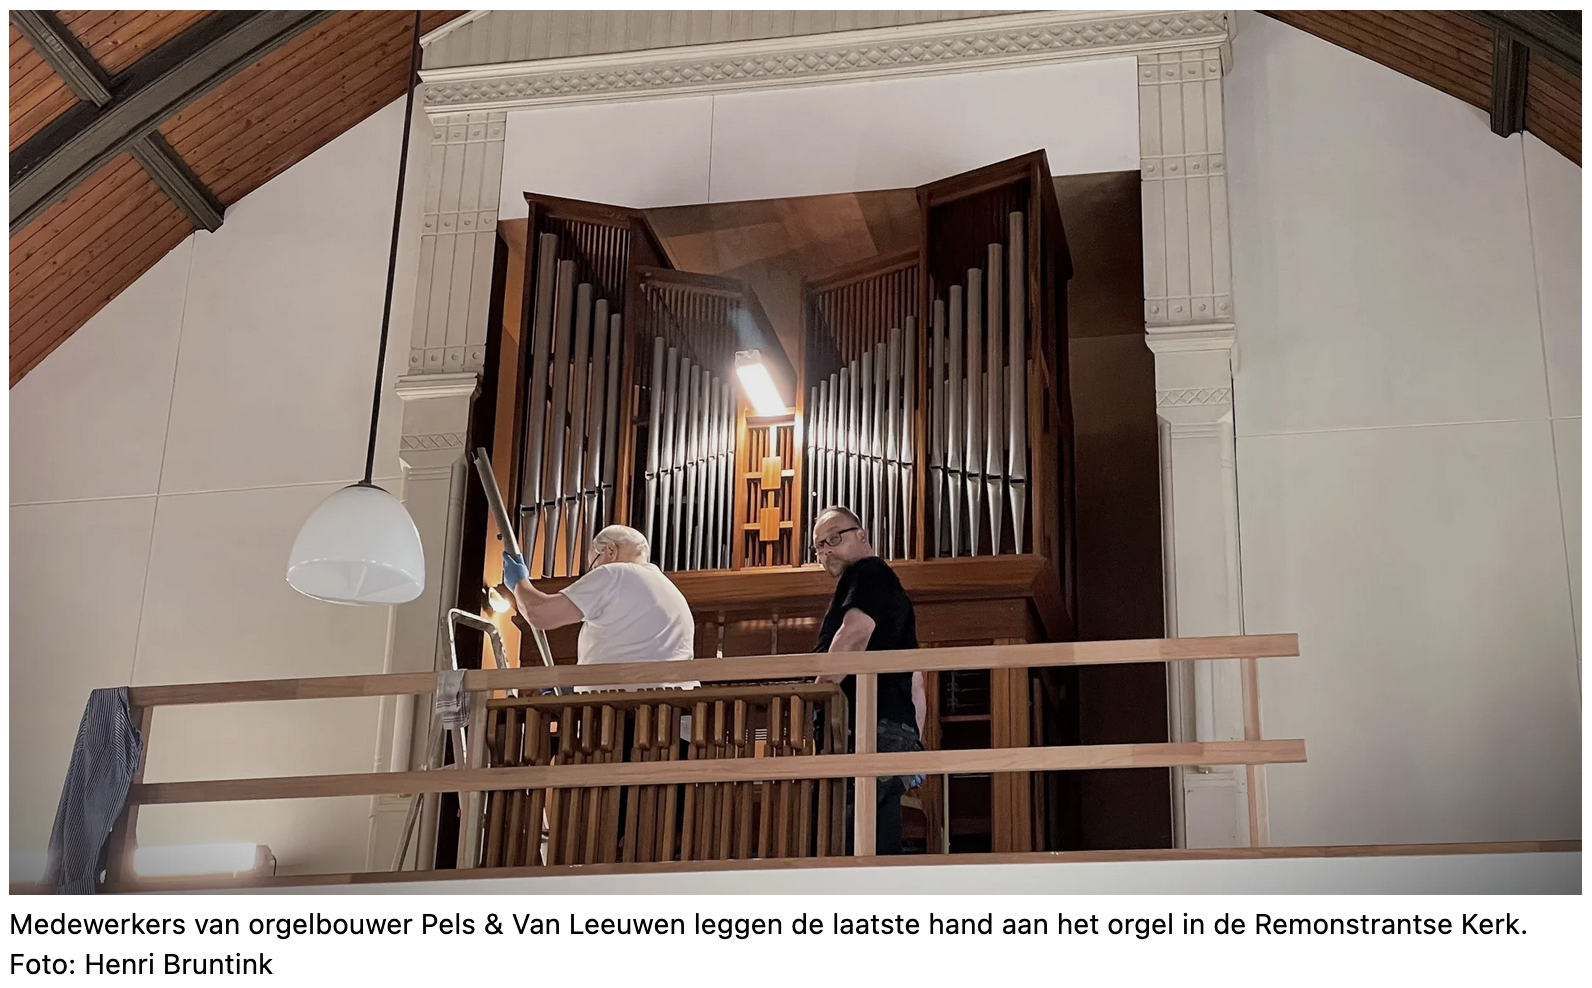 Nieuw orgel voor de remonstrantse kerk komt uit Zeeland